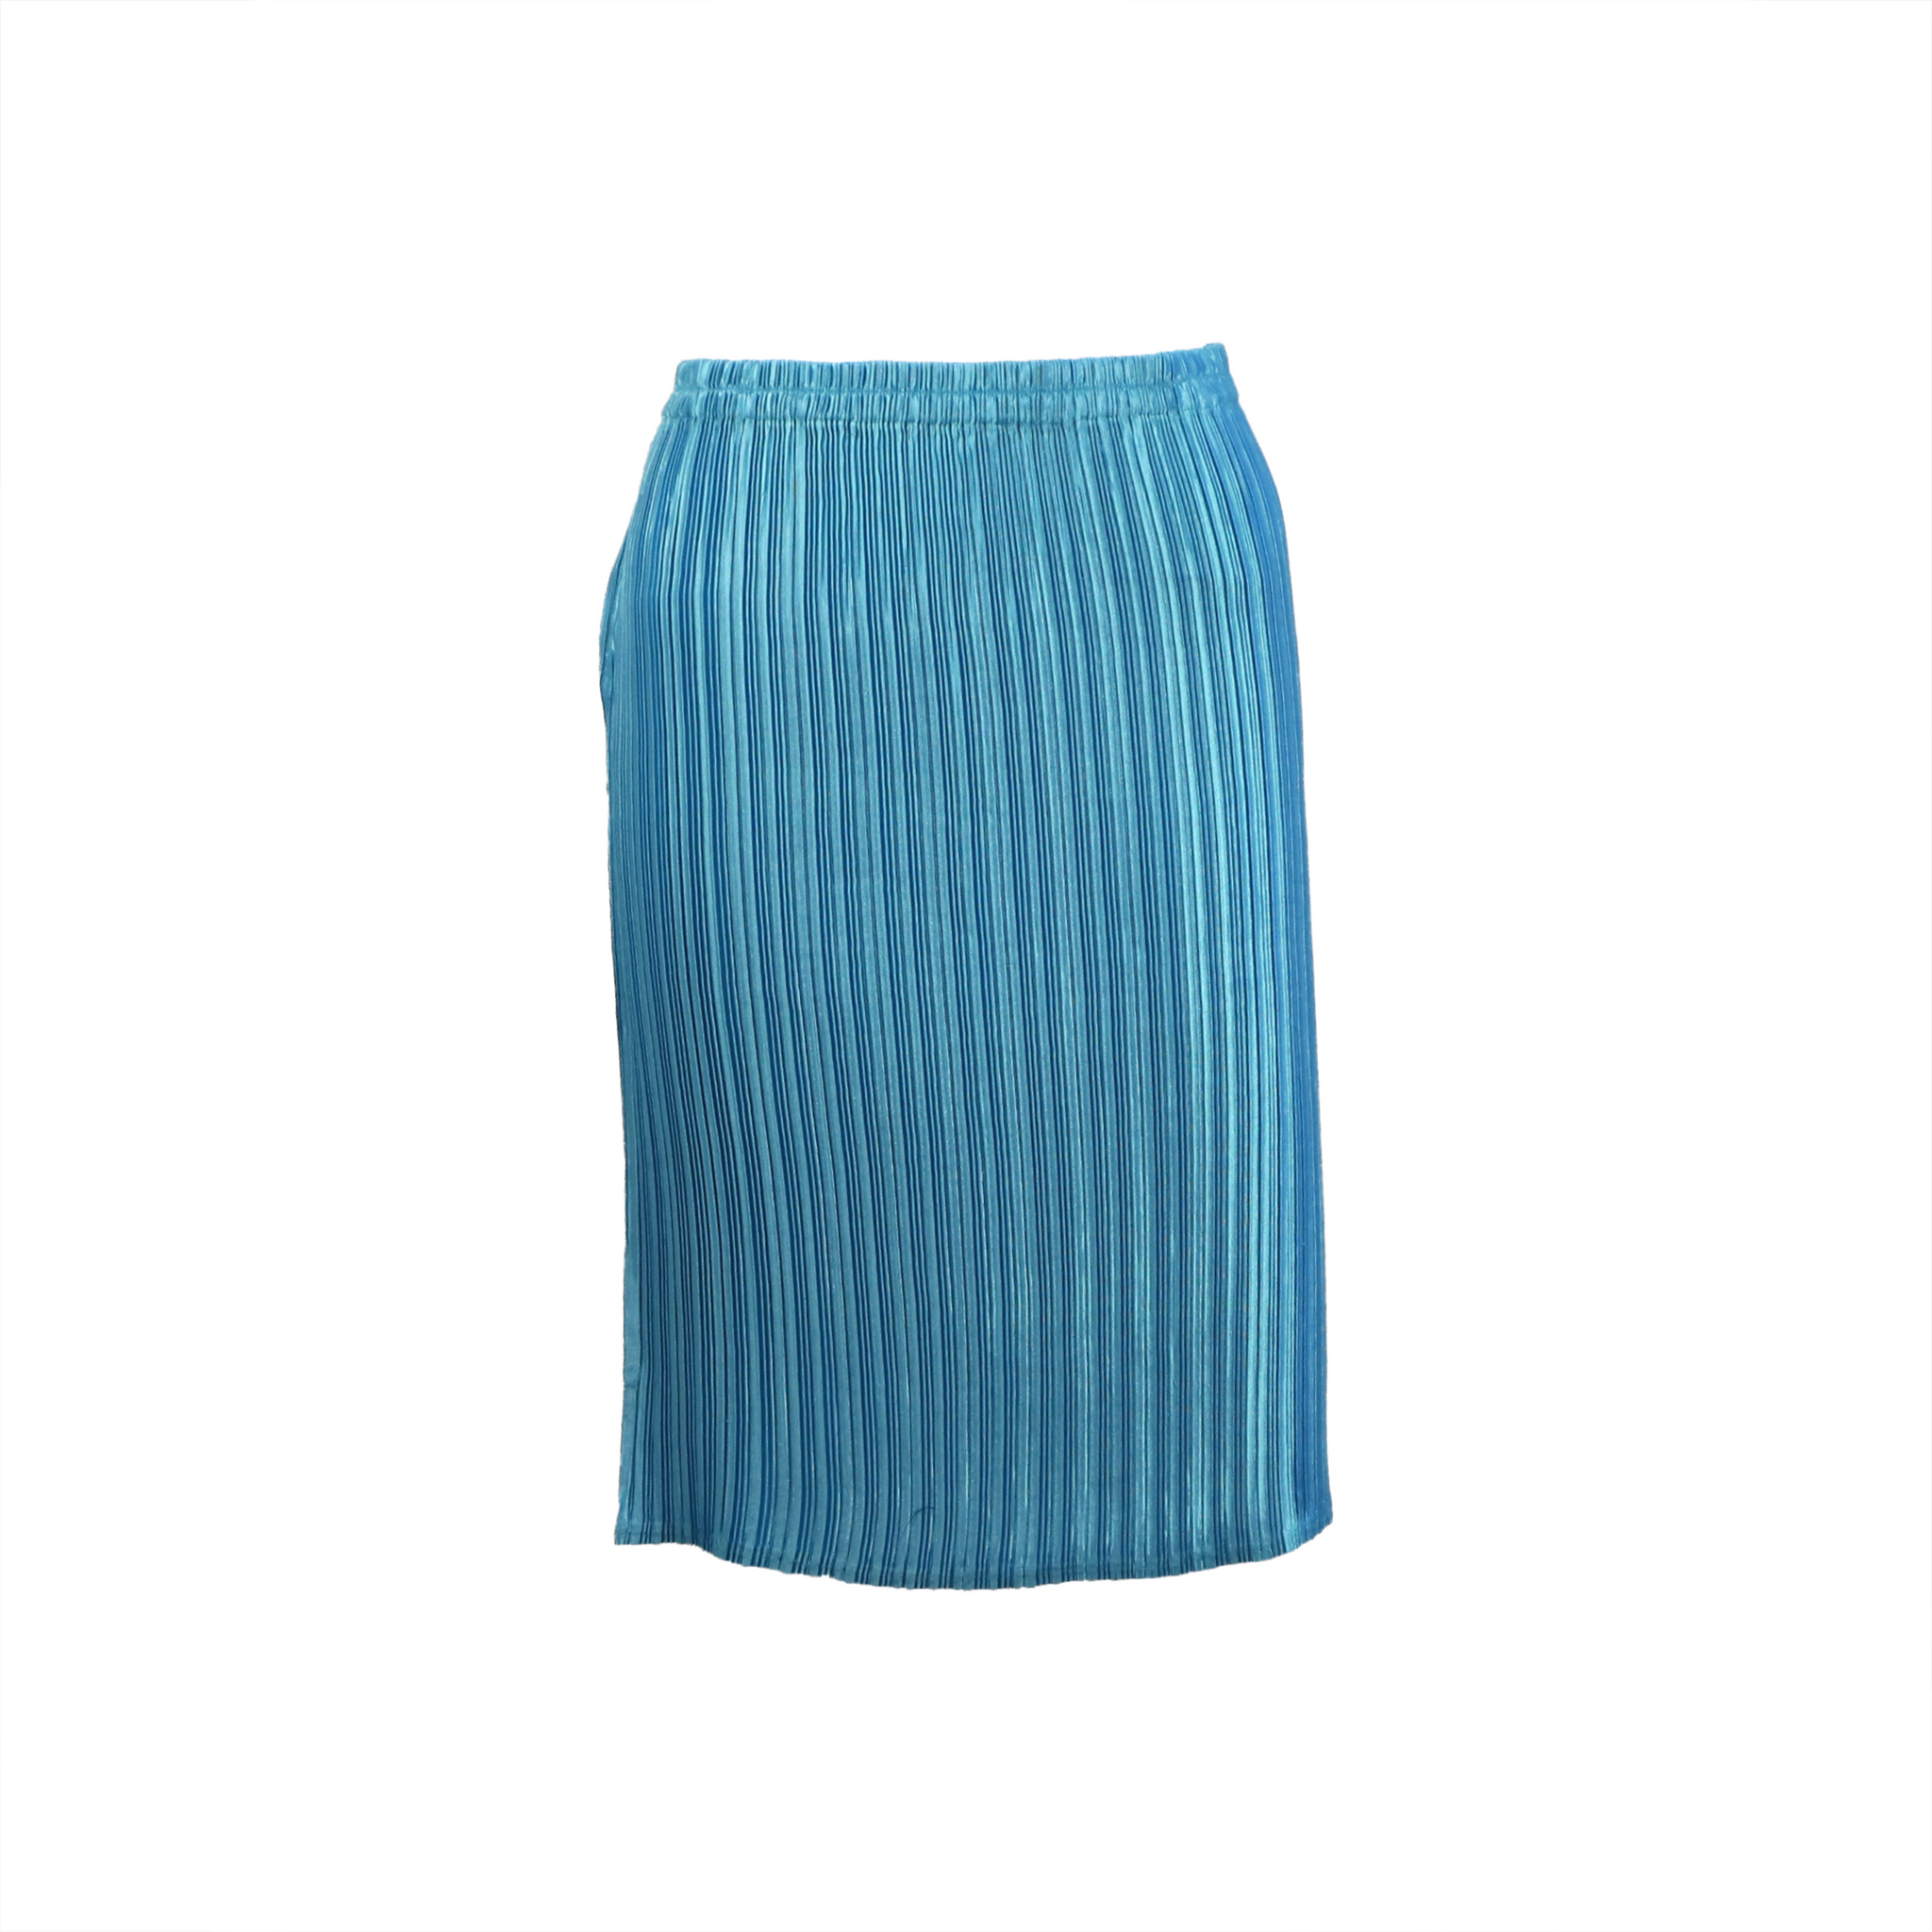 Minimalistic pleated mid skirt